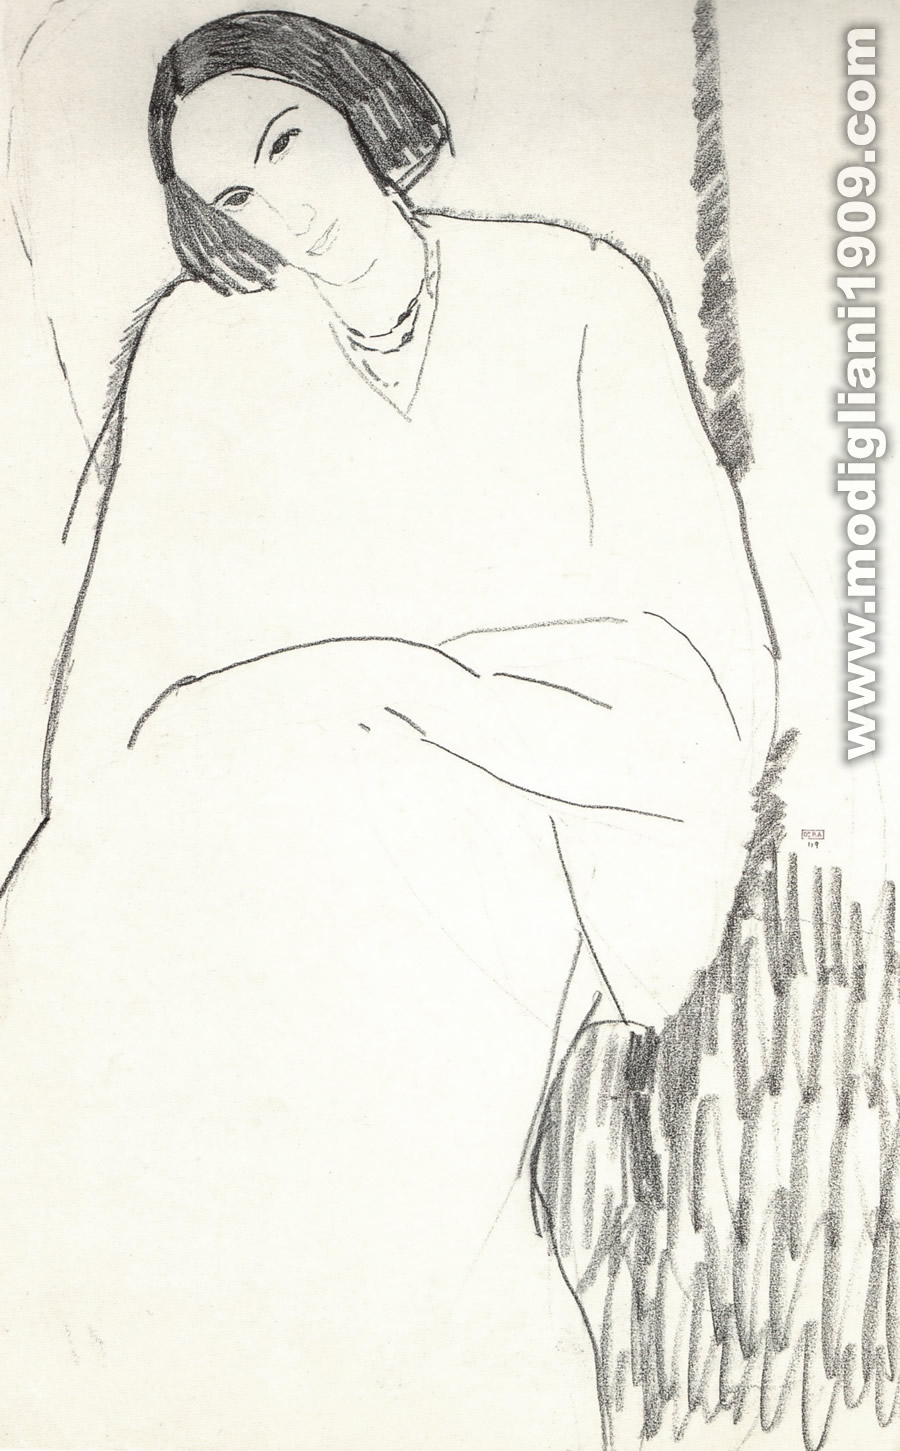 Ritratto di donna seduta, con la testa inclinata verso destra